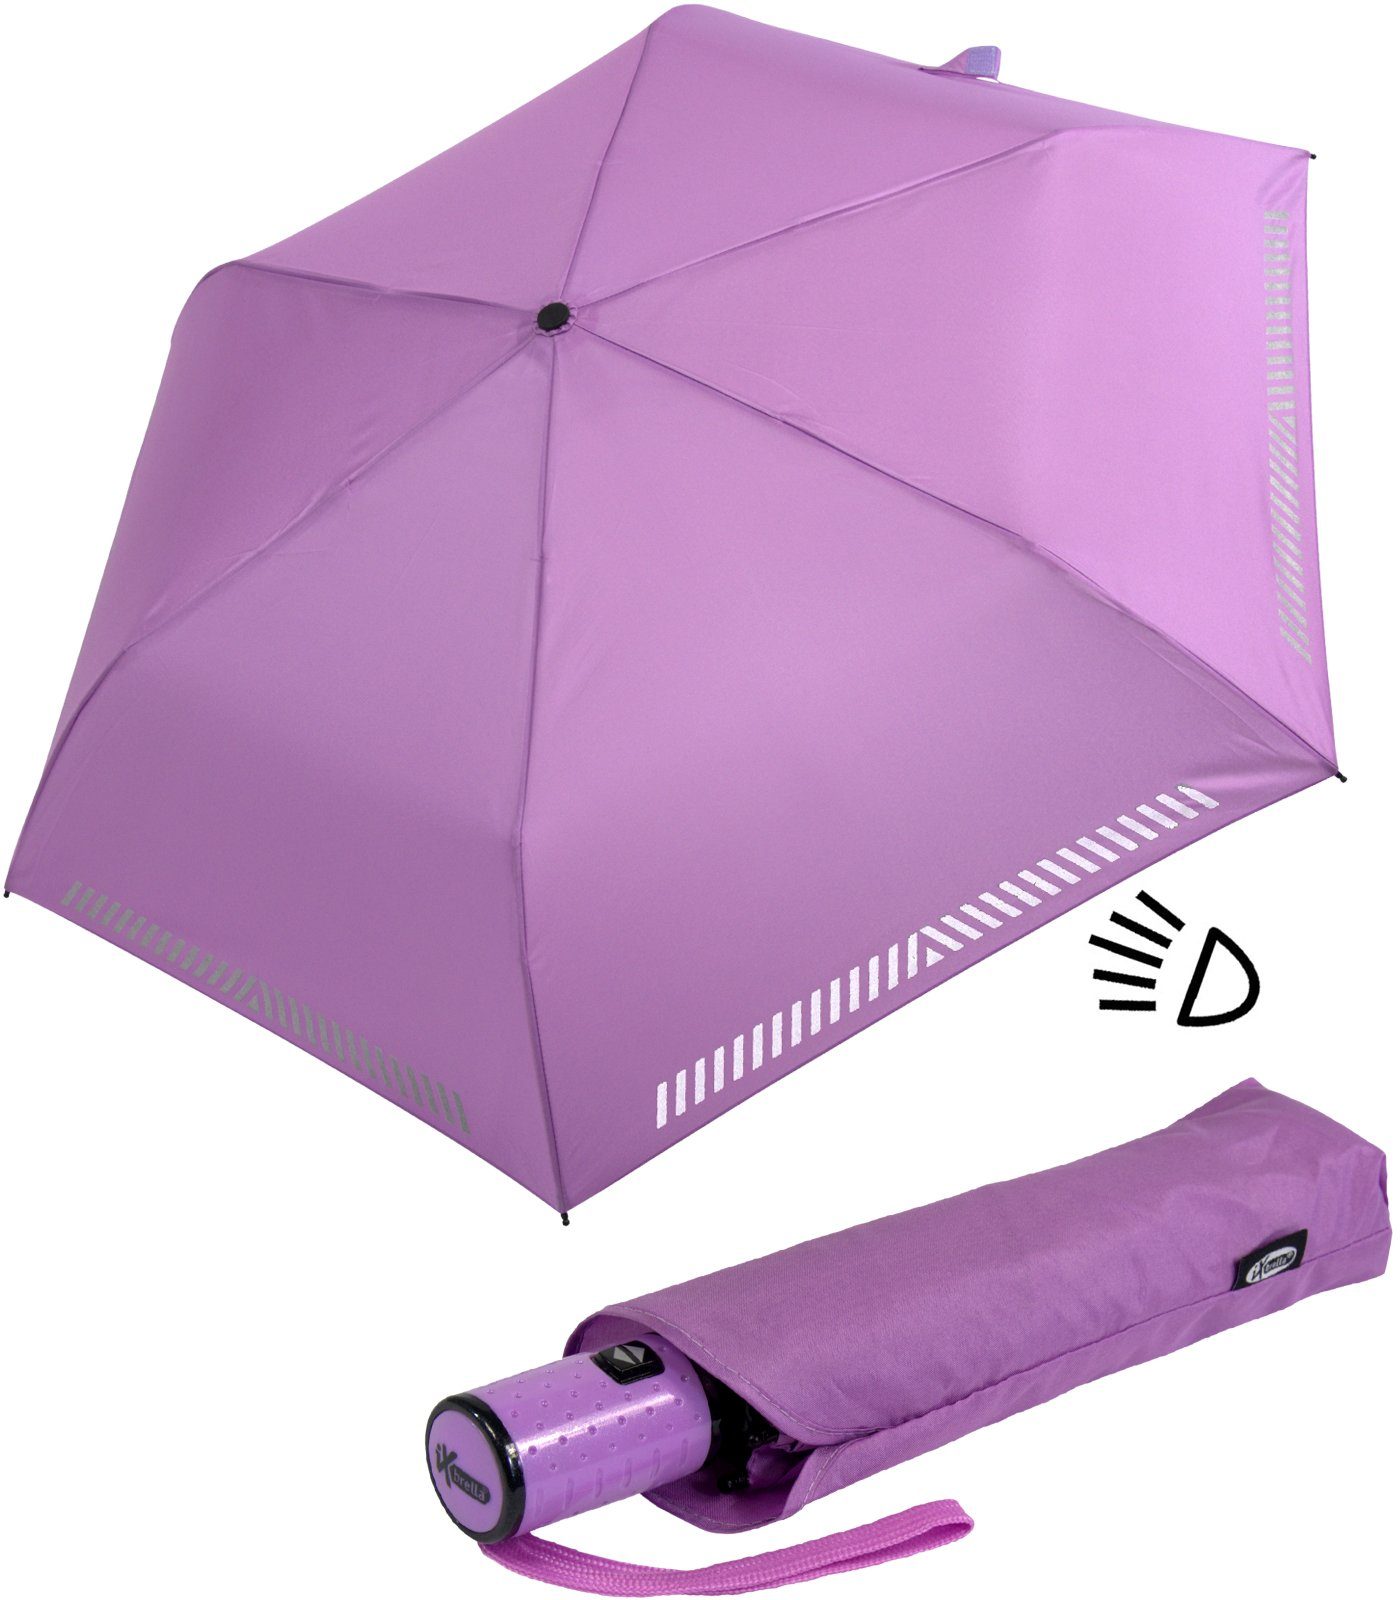 iX-brella Taschenregenschirm mit Kinderschirm hell-lila durch - Sicherheit Reflex-Streifen Auf-Zu-Automatik, reflektierend